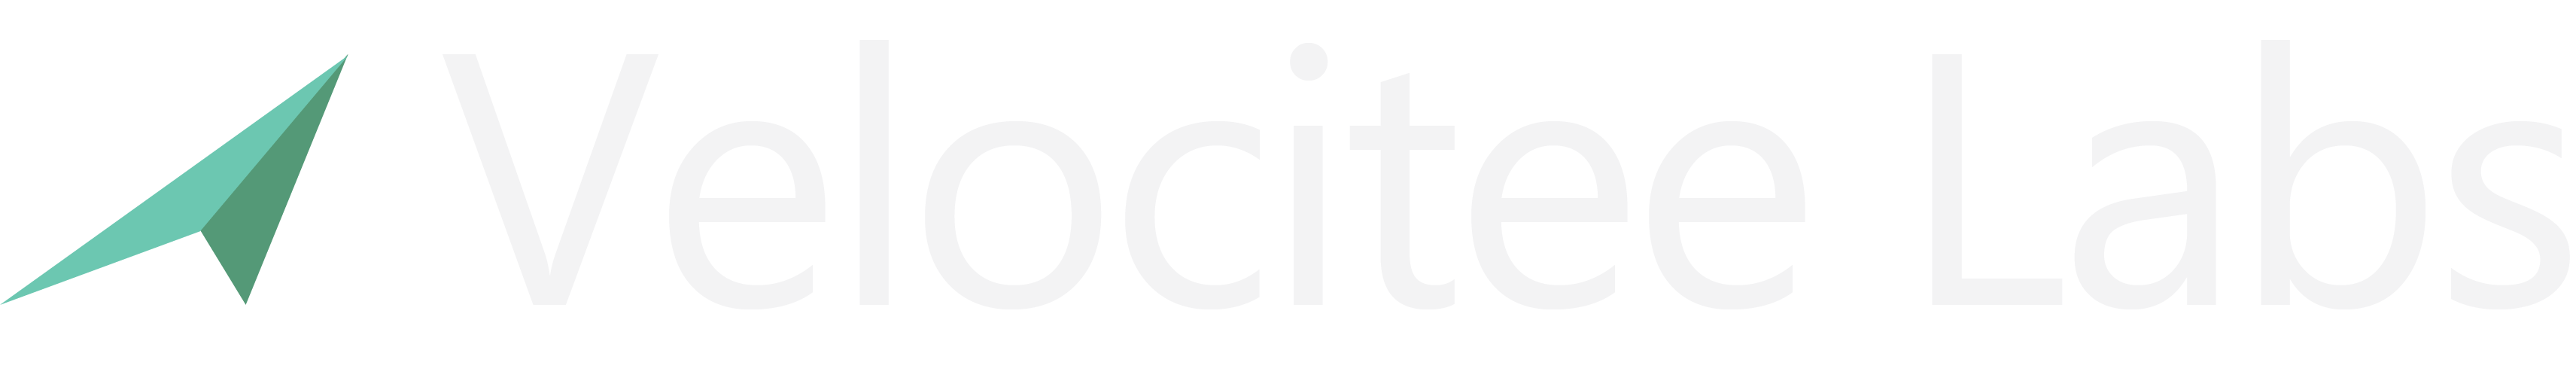 Velocitee Labs Logo